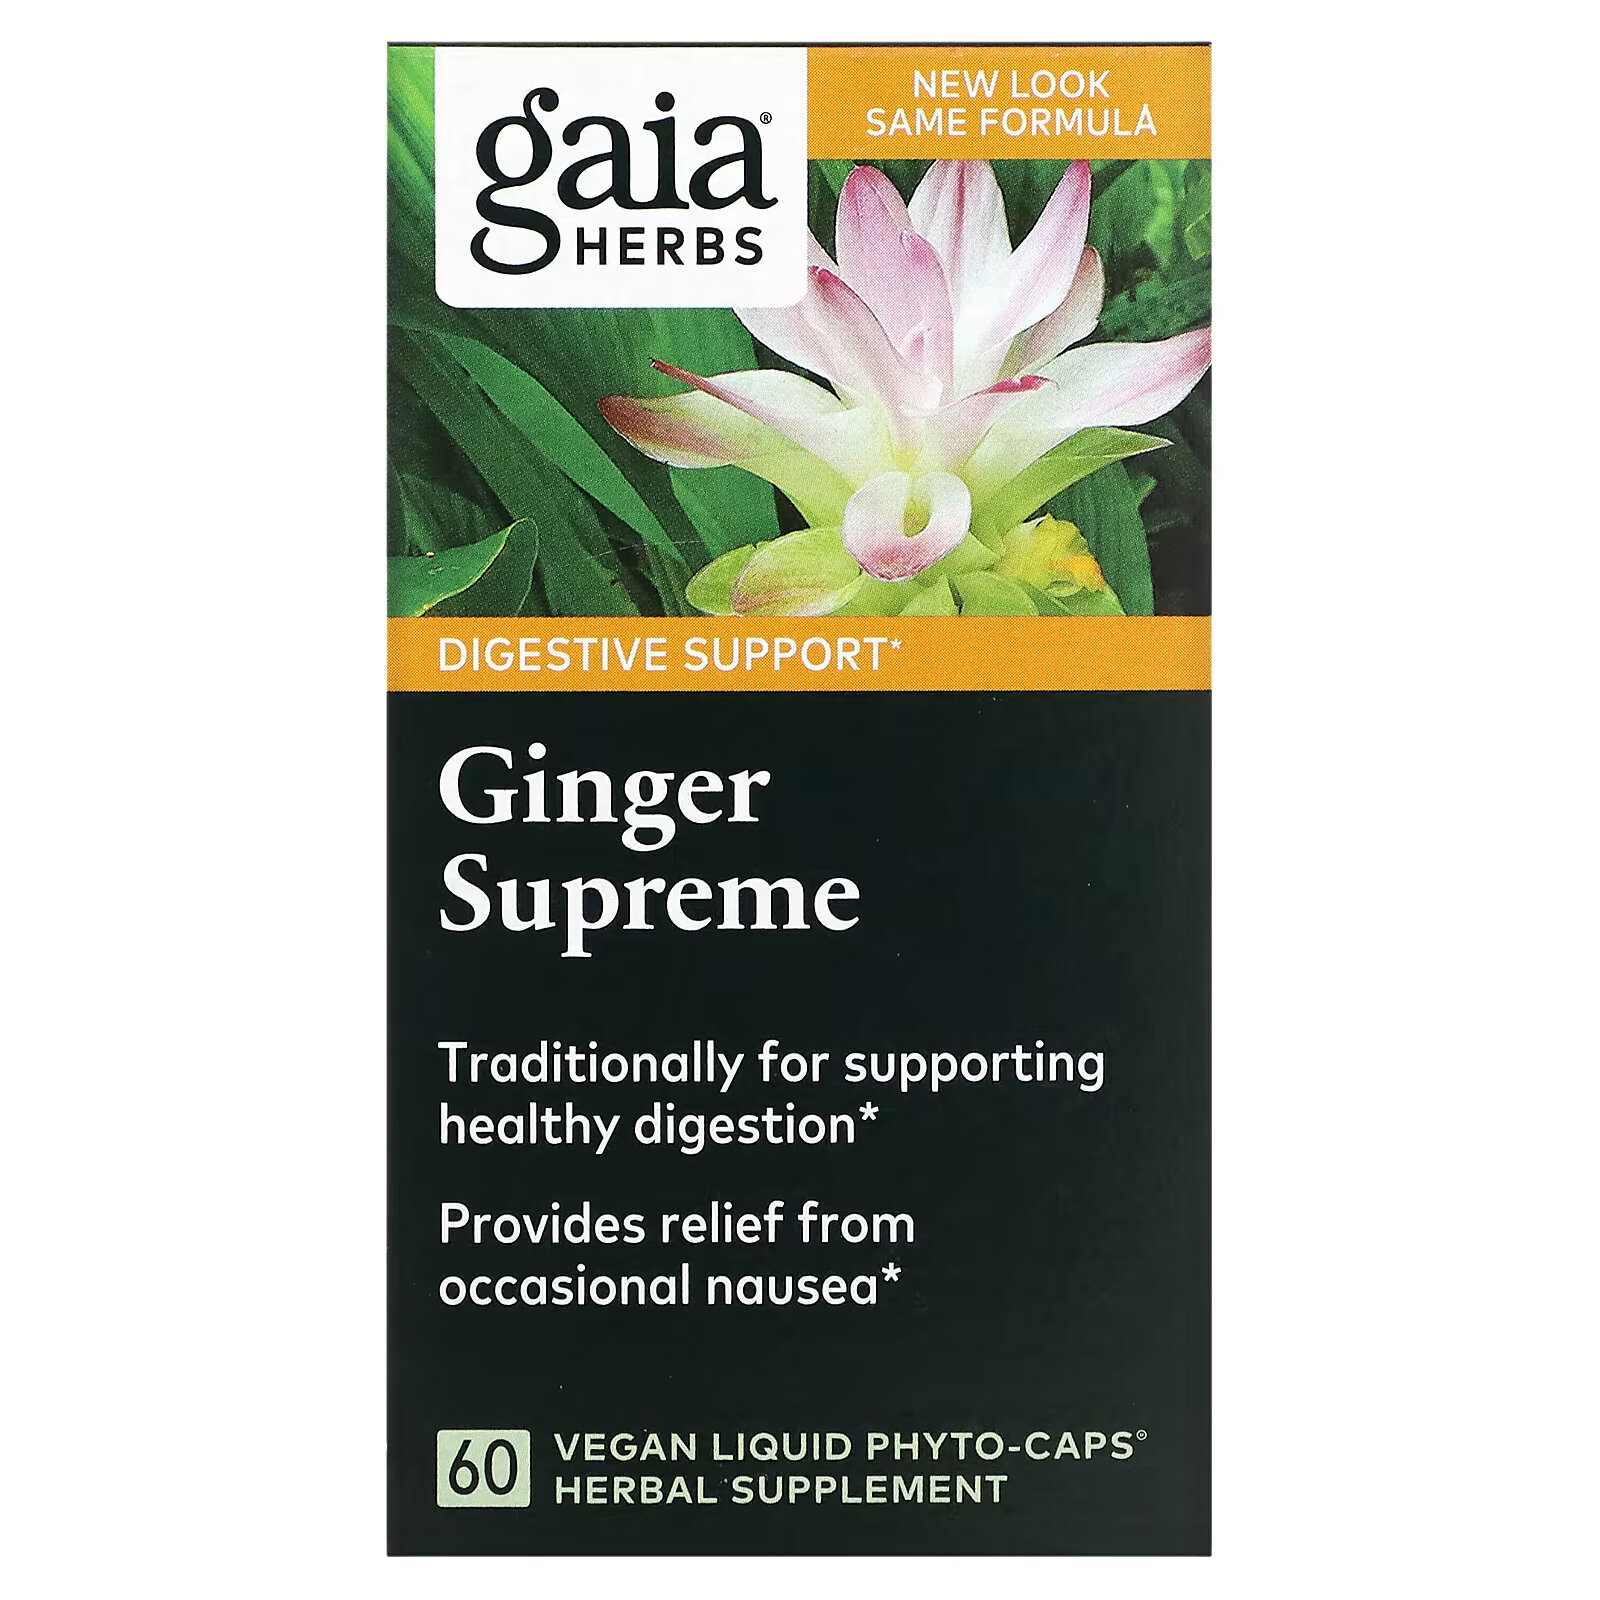 Gaia Herbs, Ginger Supreme, 60 веганских жидких фито-капсул gaia herbs средство для поддержания здоровья печени 60 веганских жидких капсул phyto cap